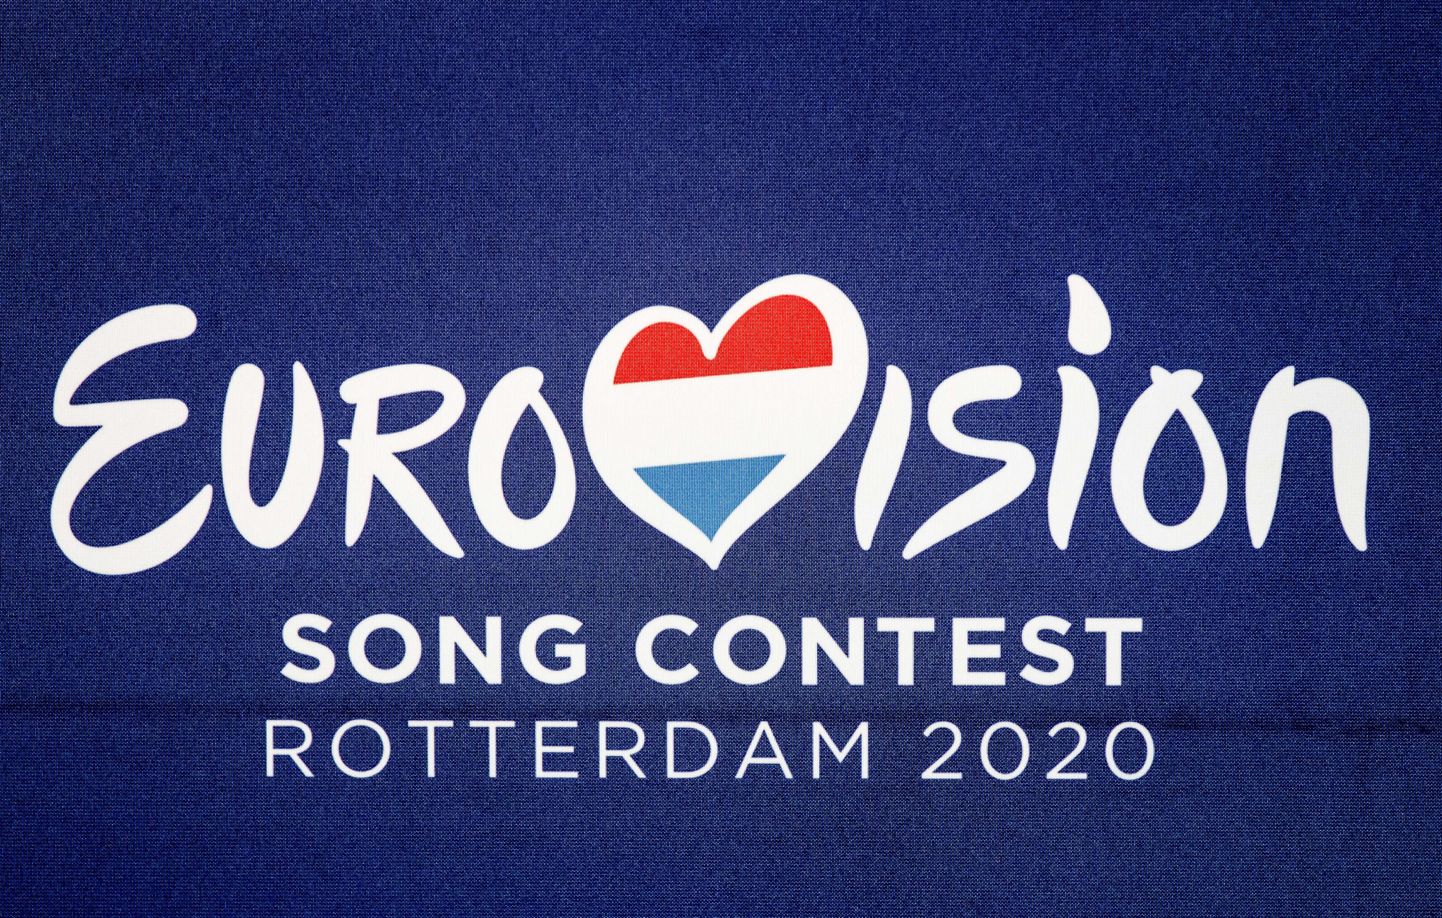 Eurovisiooni lauluvõistluse logo 2020. aastal, mil võistlus COVID-19 pandeemia tõttu edasi lükati.